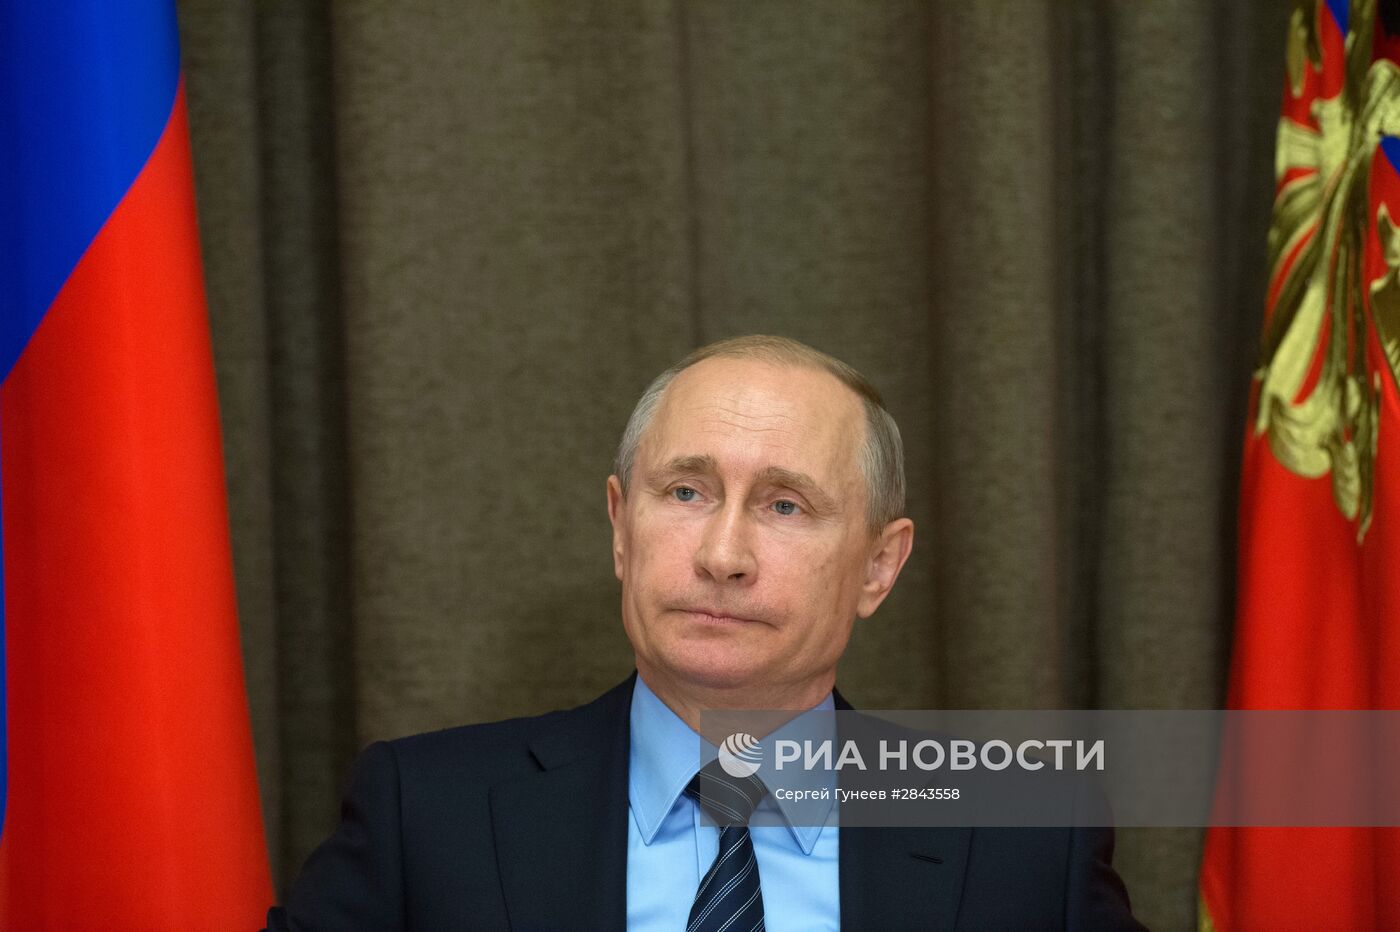 Президент России В.Путин провел совещание с руководством министерства обороны